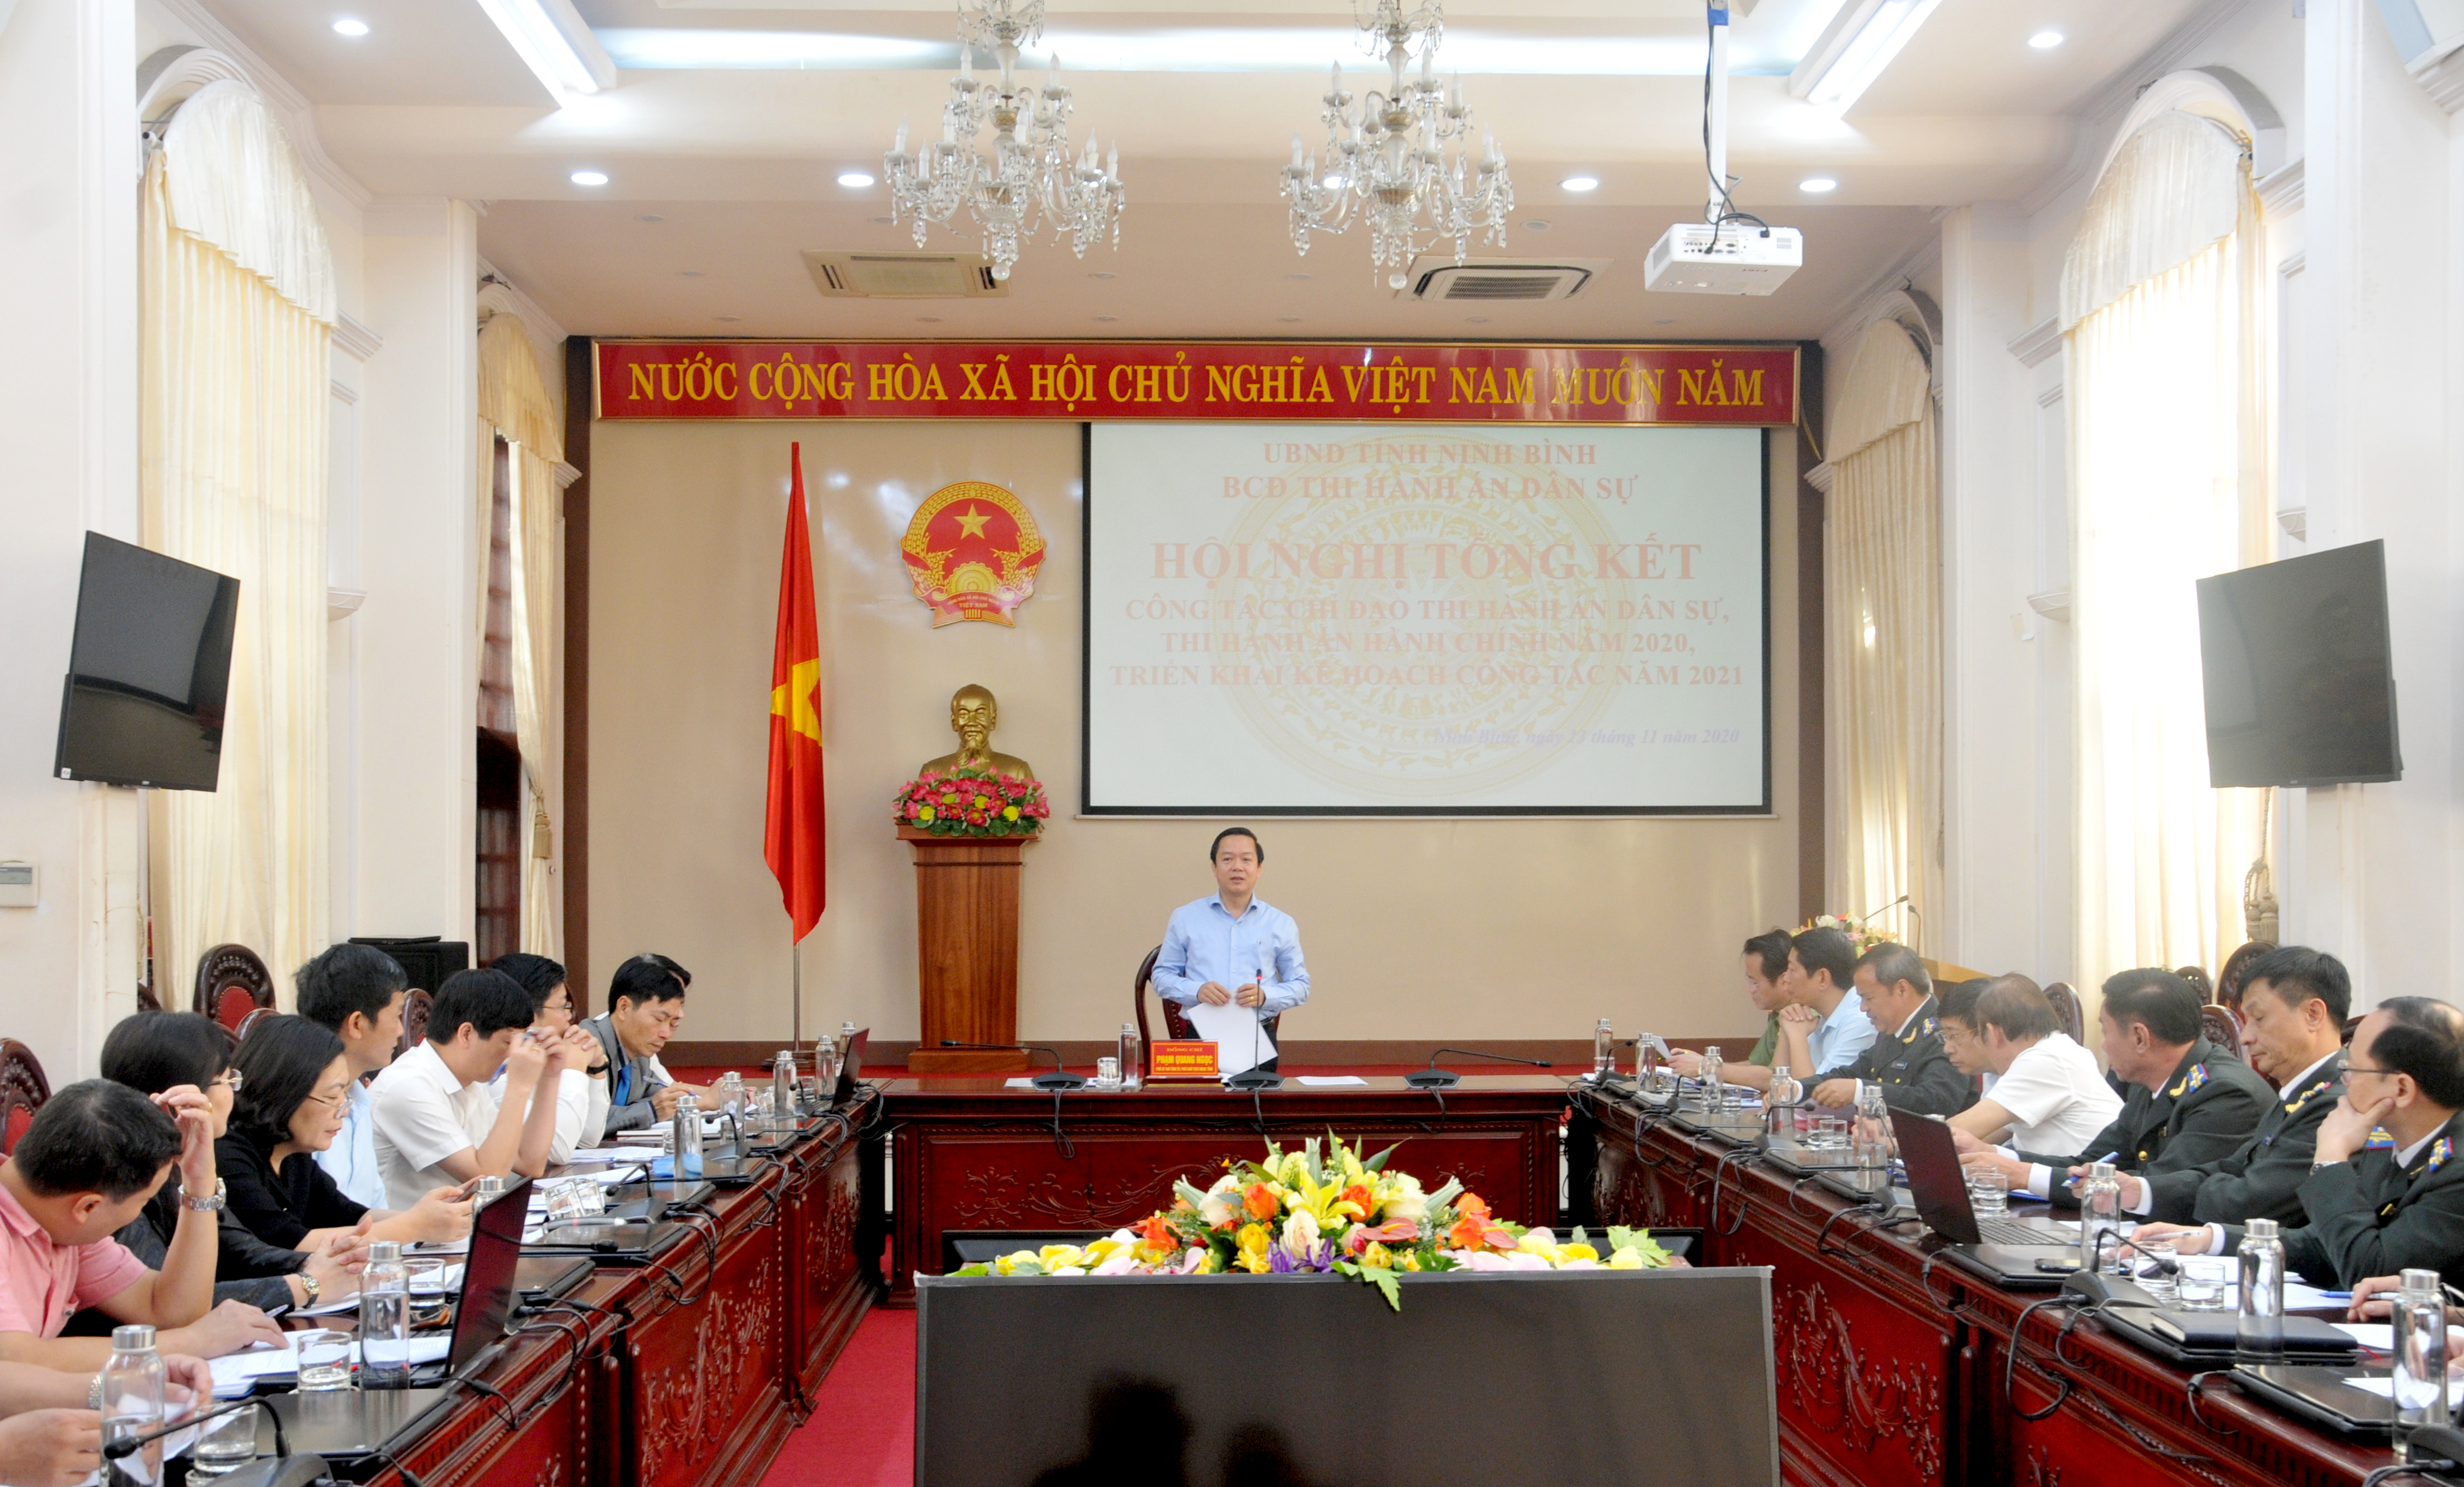 Hội nghị tổng kết hoạt động Ban Chỉ đạo Thi hành án dân sự tỉnh Ninh Bình